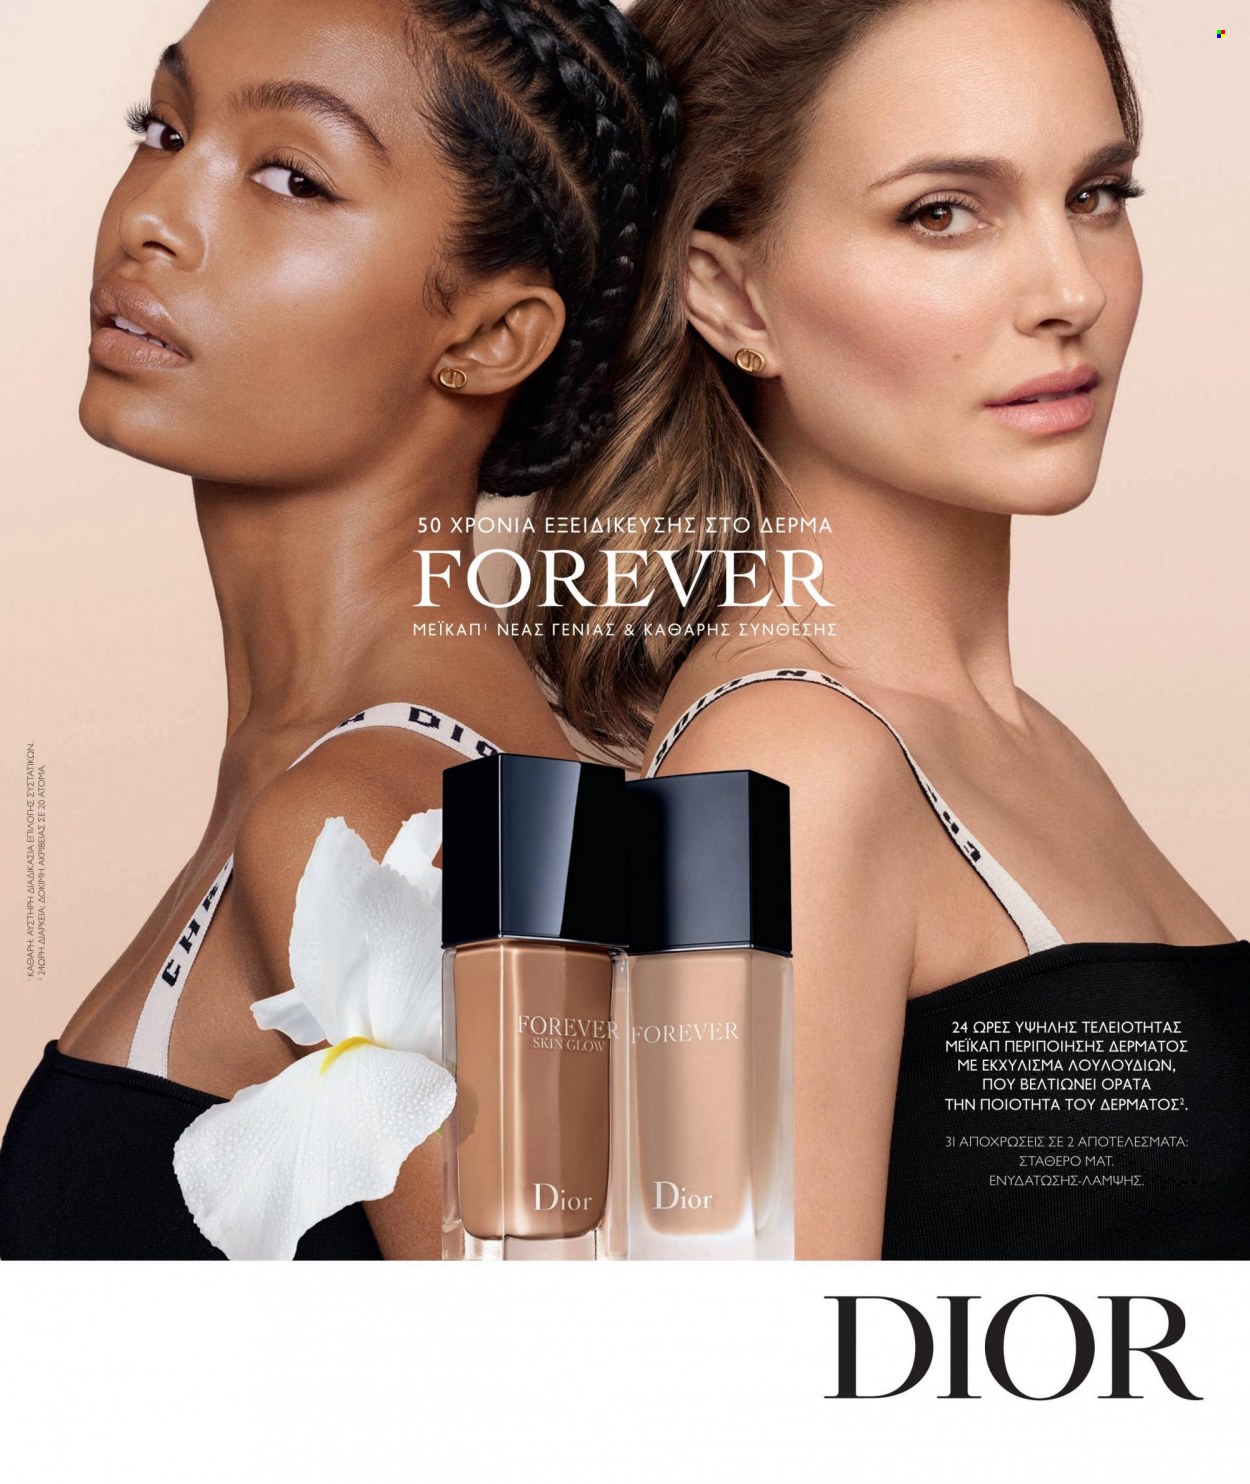 Φυλλάδια Hondos Center - Εκπτωτικά προϊόντα - Dior, Forever. Σελίδα 7.